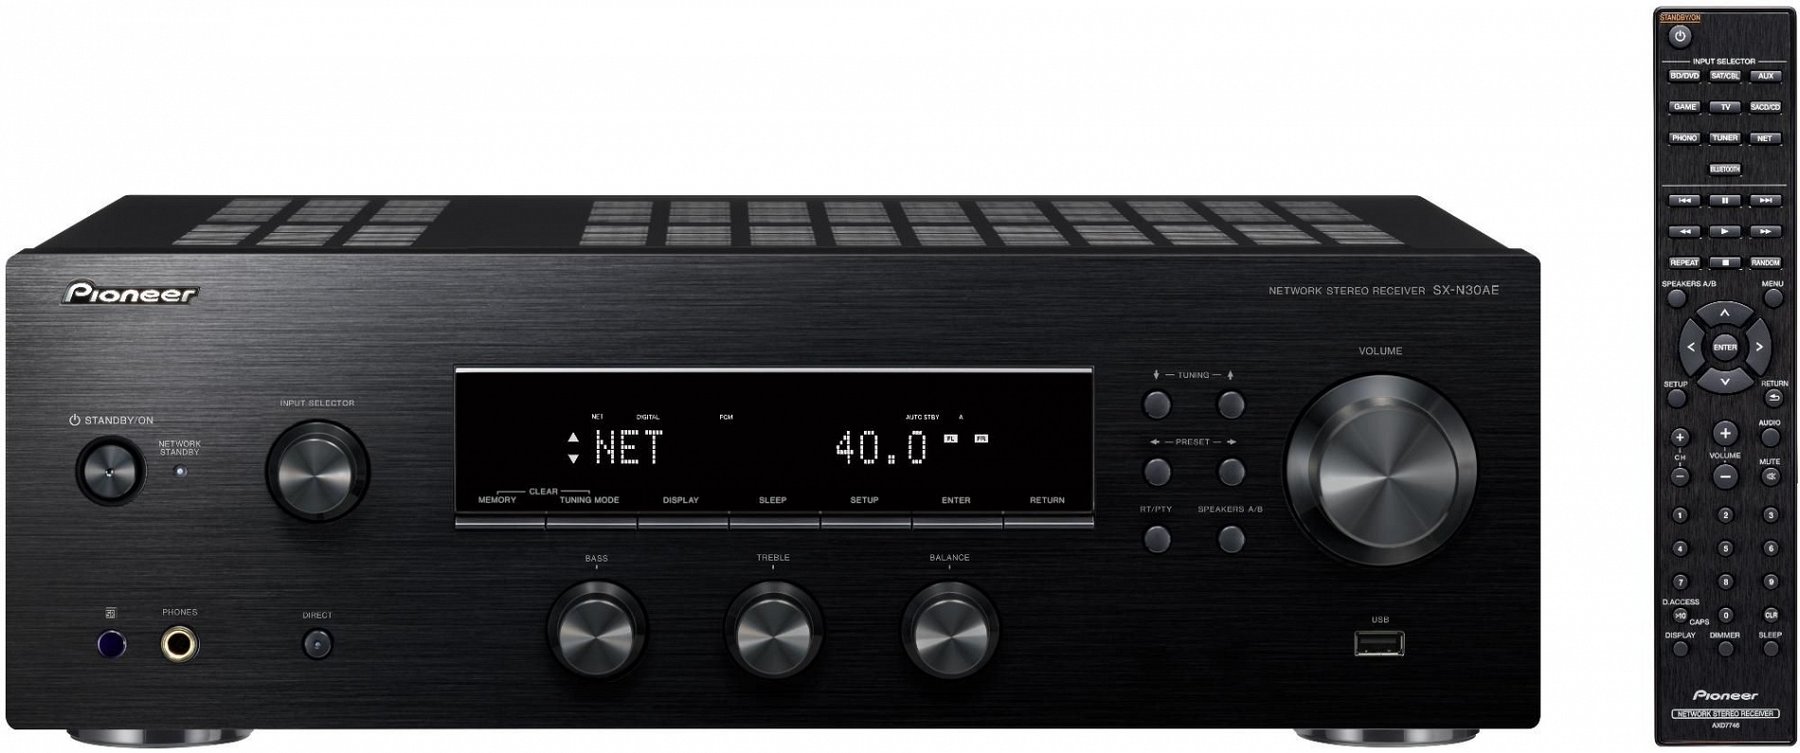 Мережевий аудіо-ресивер Pioneer SX-N30AE Black